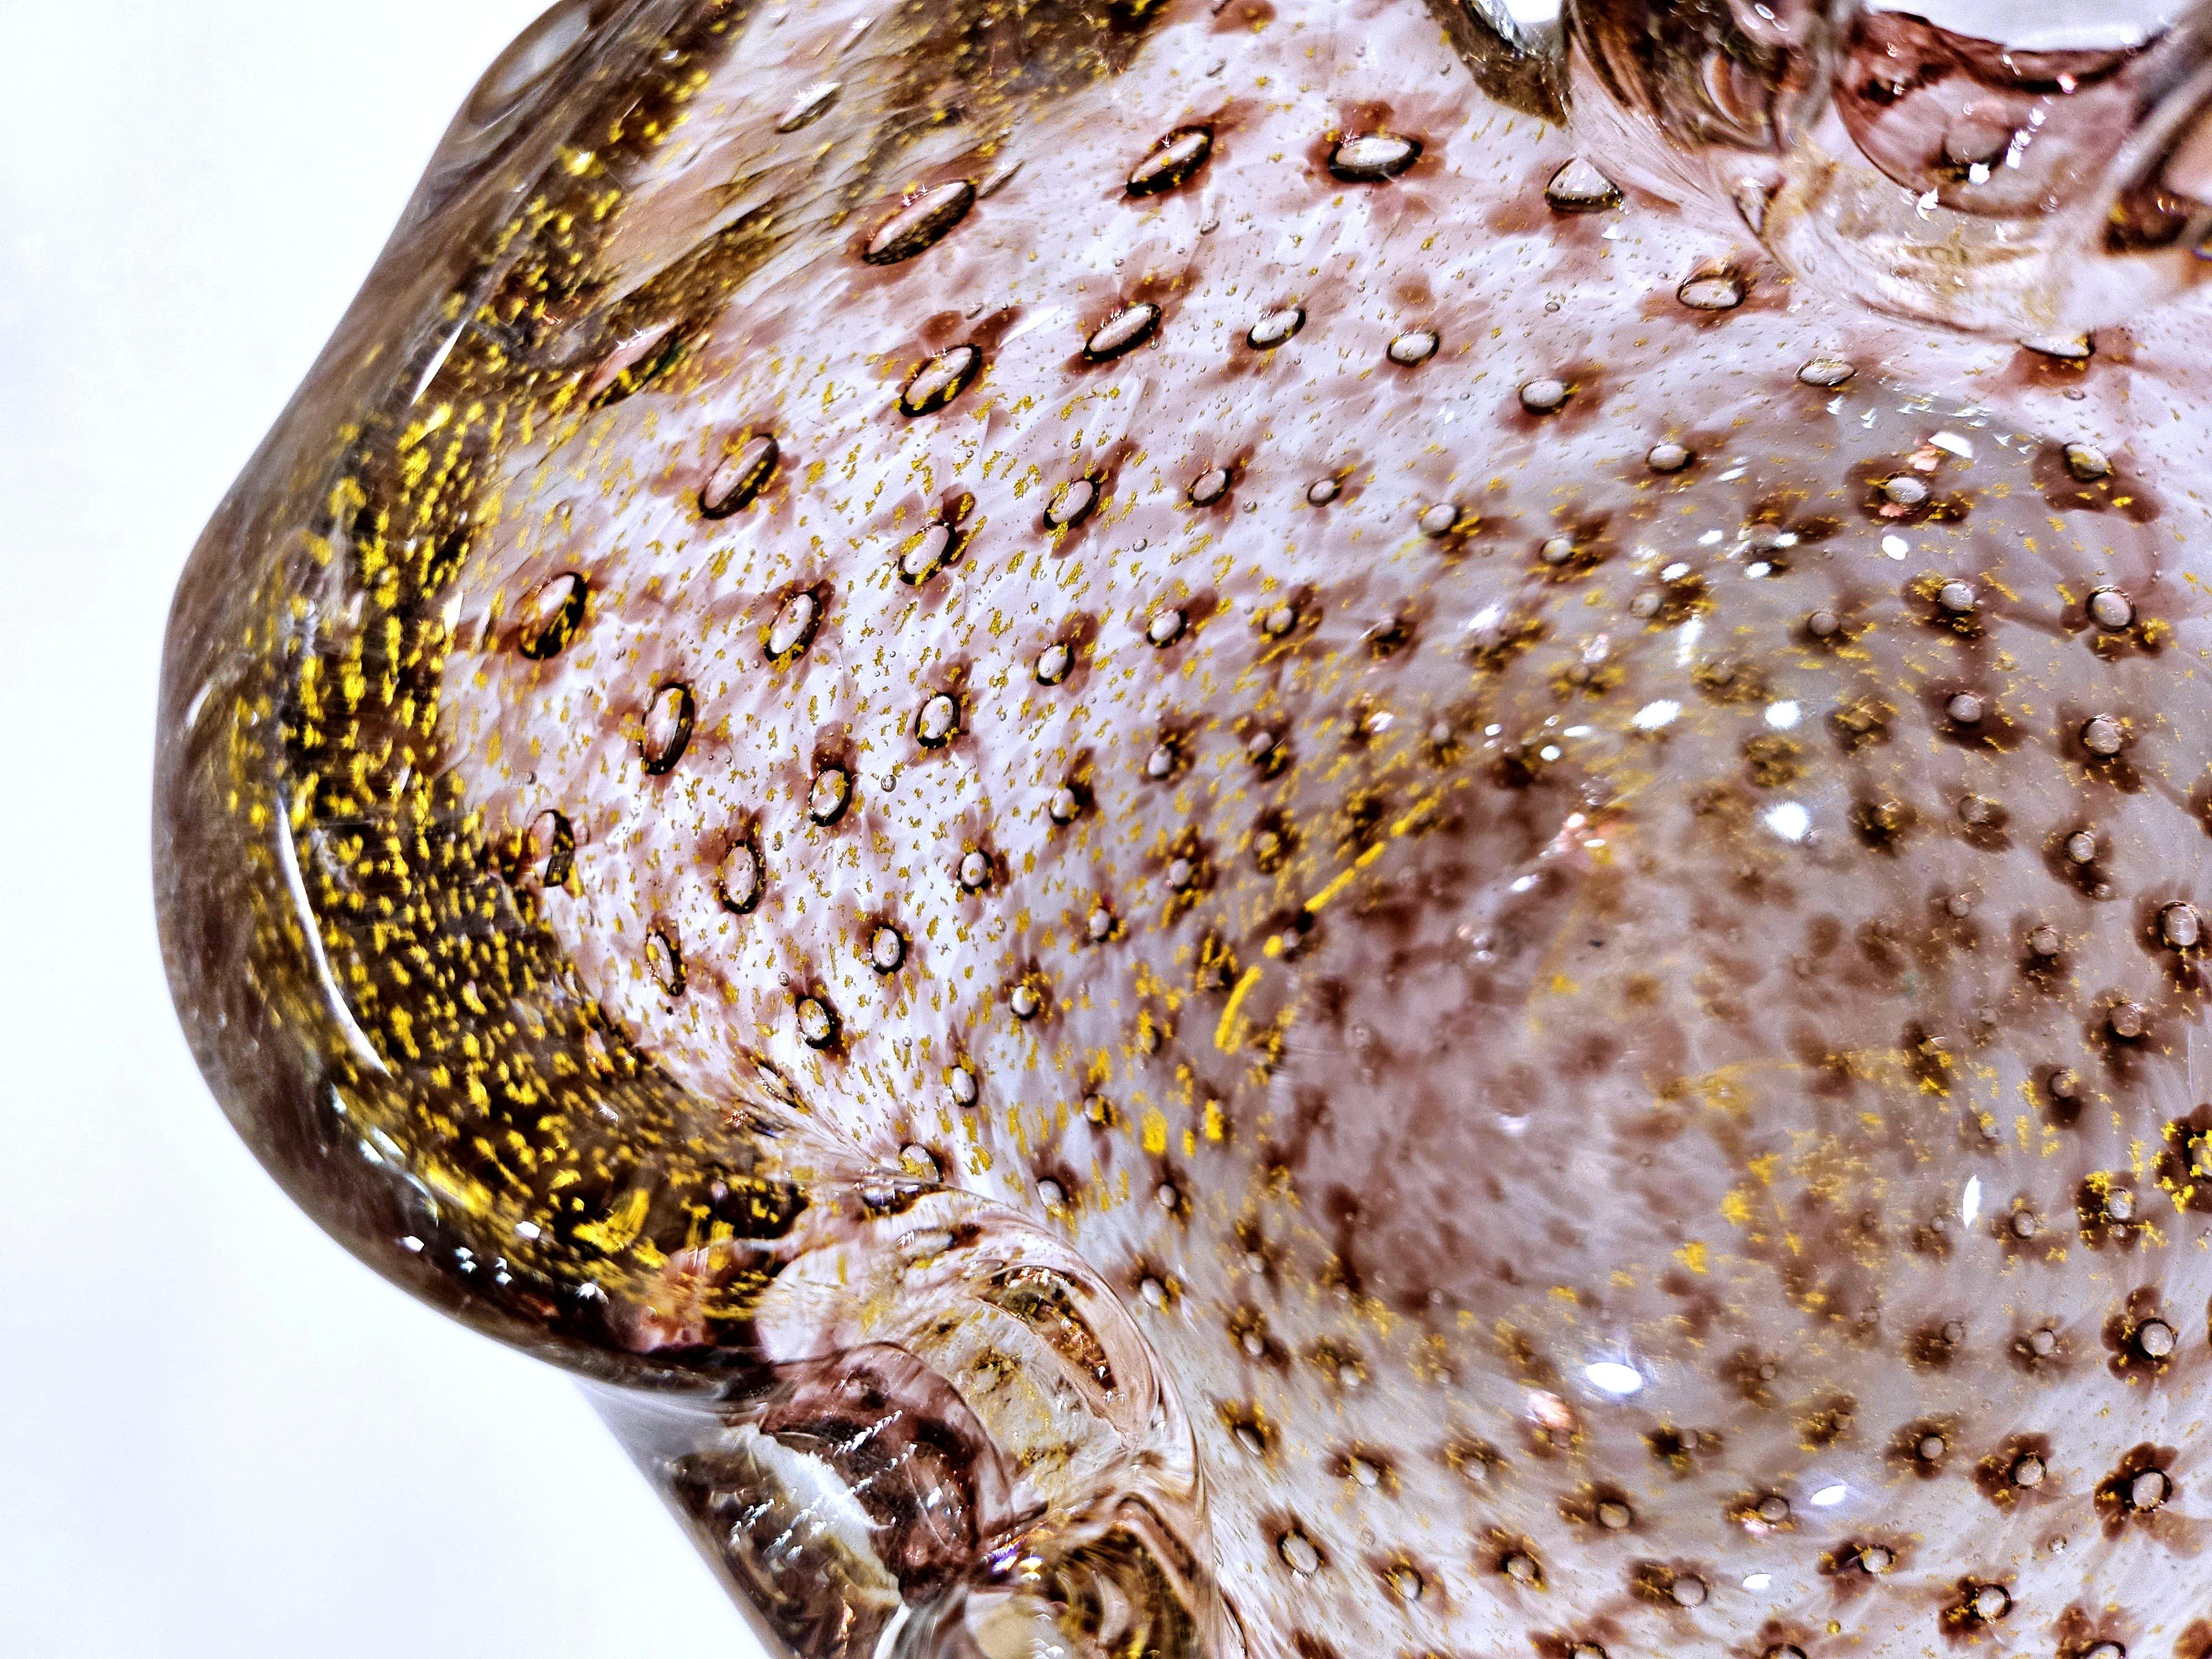 Vintage Murano Glass Barovier&Toso Gold Polveri & Bullicante Bowl / Ashtray
Une belle et dynamique œuvre d'art en verre de Murano en très bon état vintage avec des tons violacés, prune et bordeaux et des polveri dorés.
Pas d'ébréchures ni de